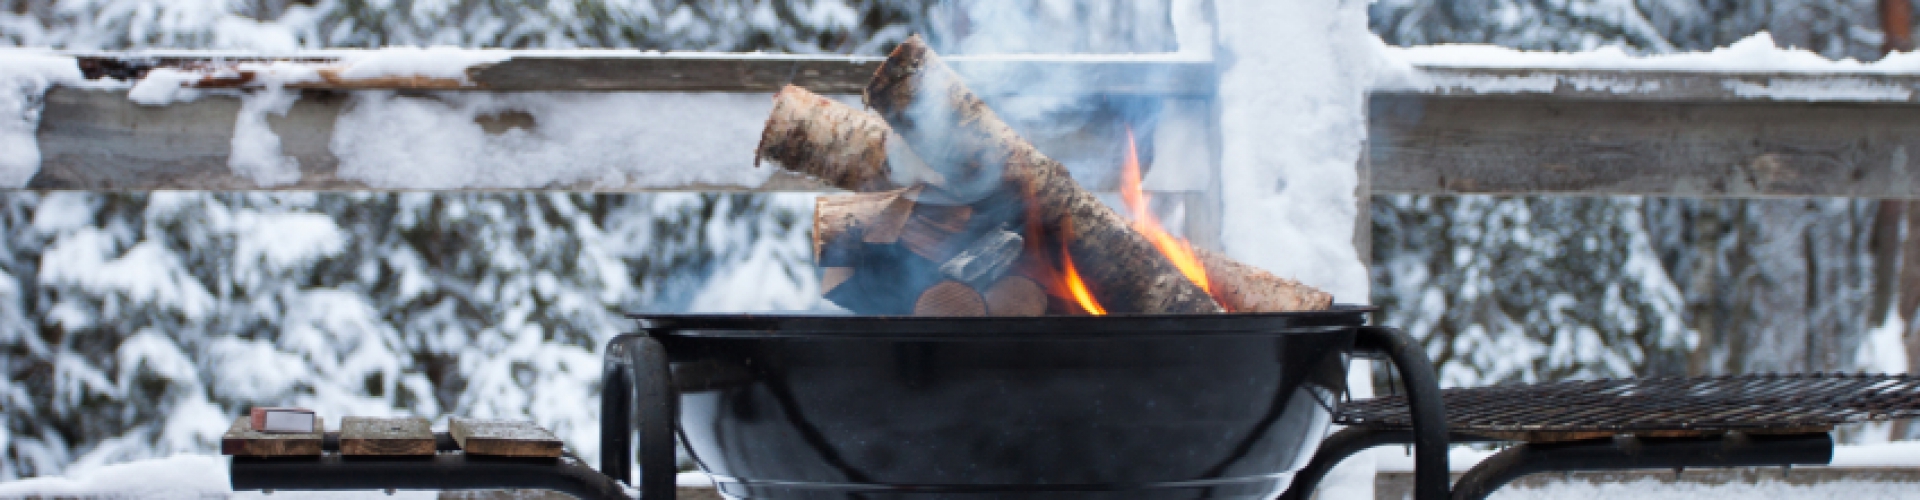 Que faire de son barbecue lorsque l’hiver arrive ?